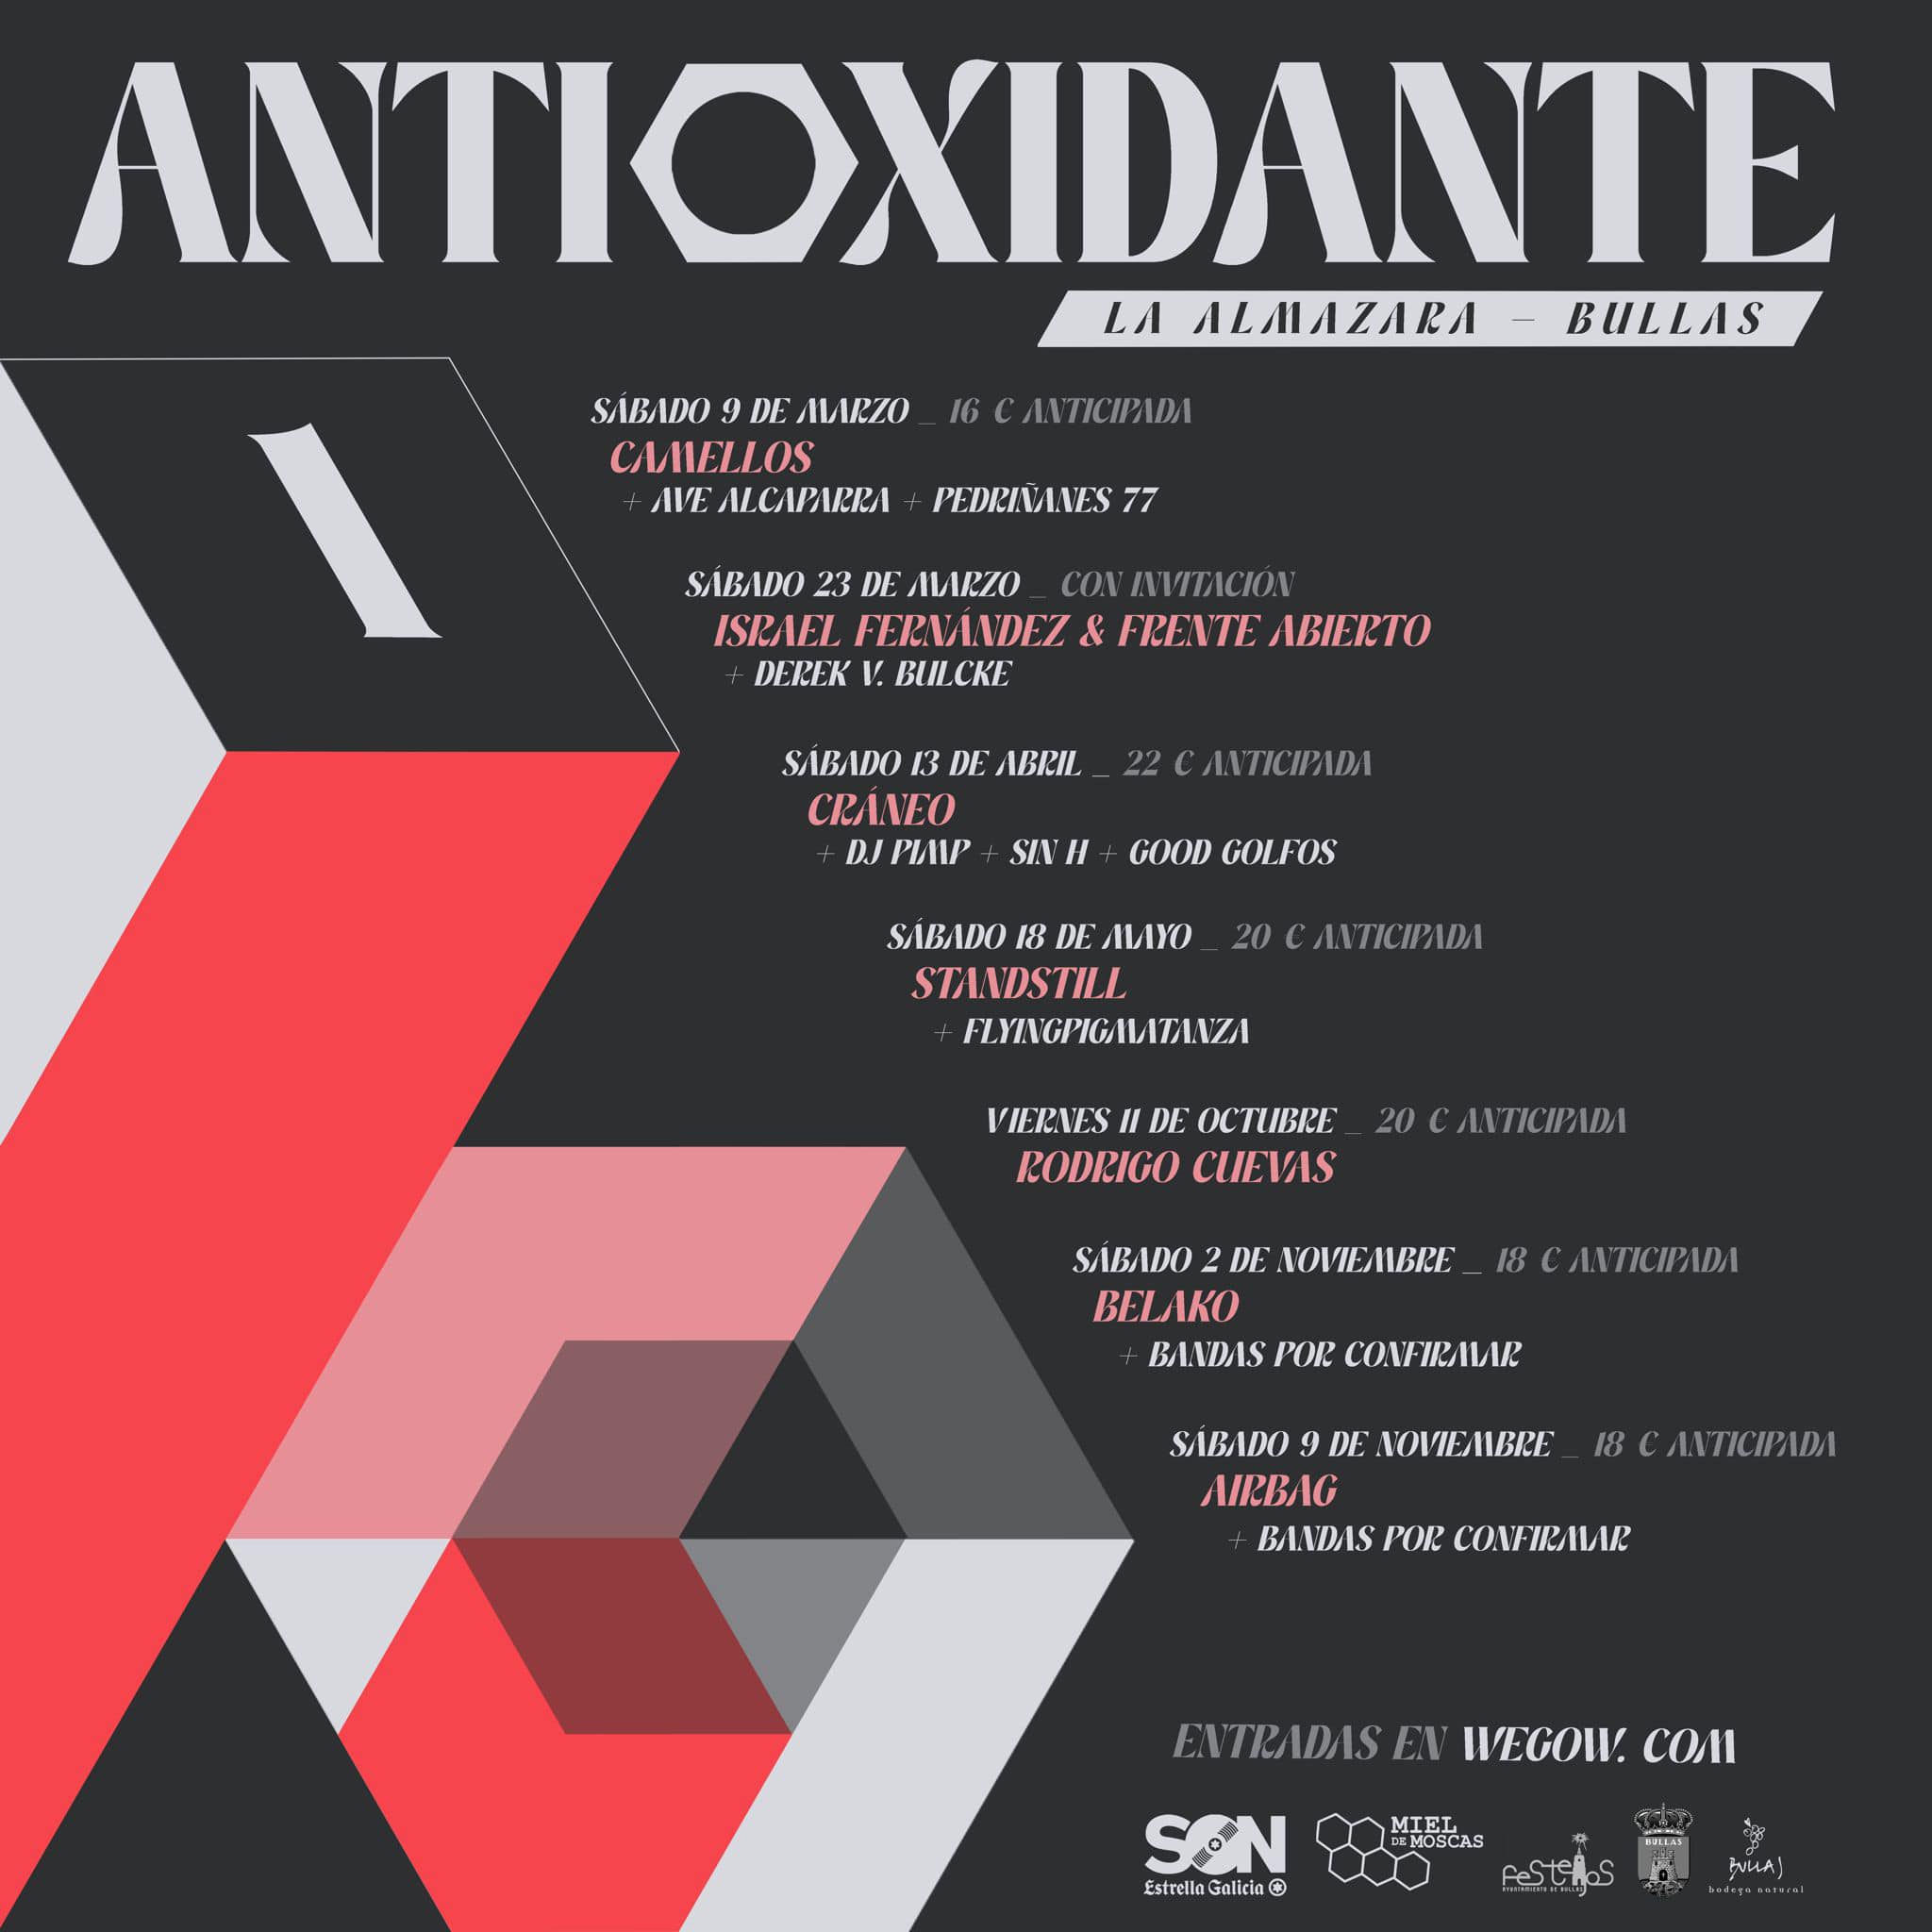 antioxidante-bullas-conciertos-1.jpg